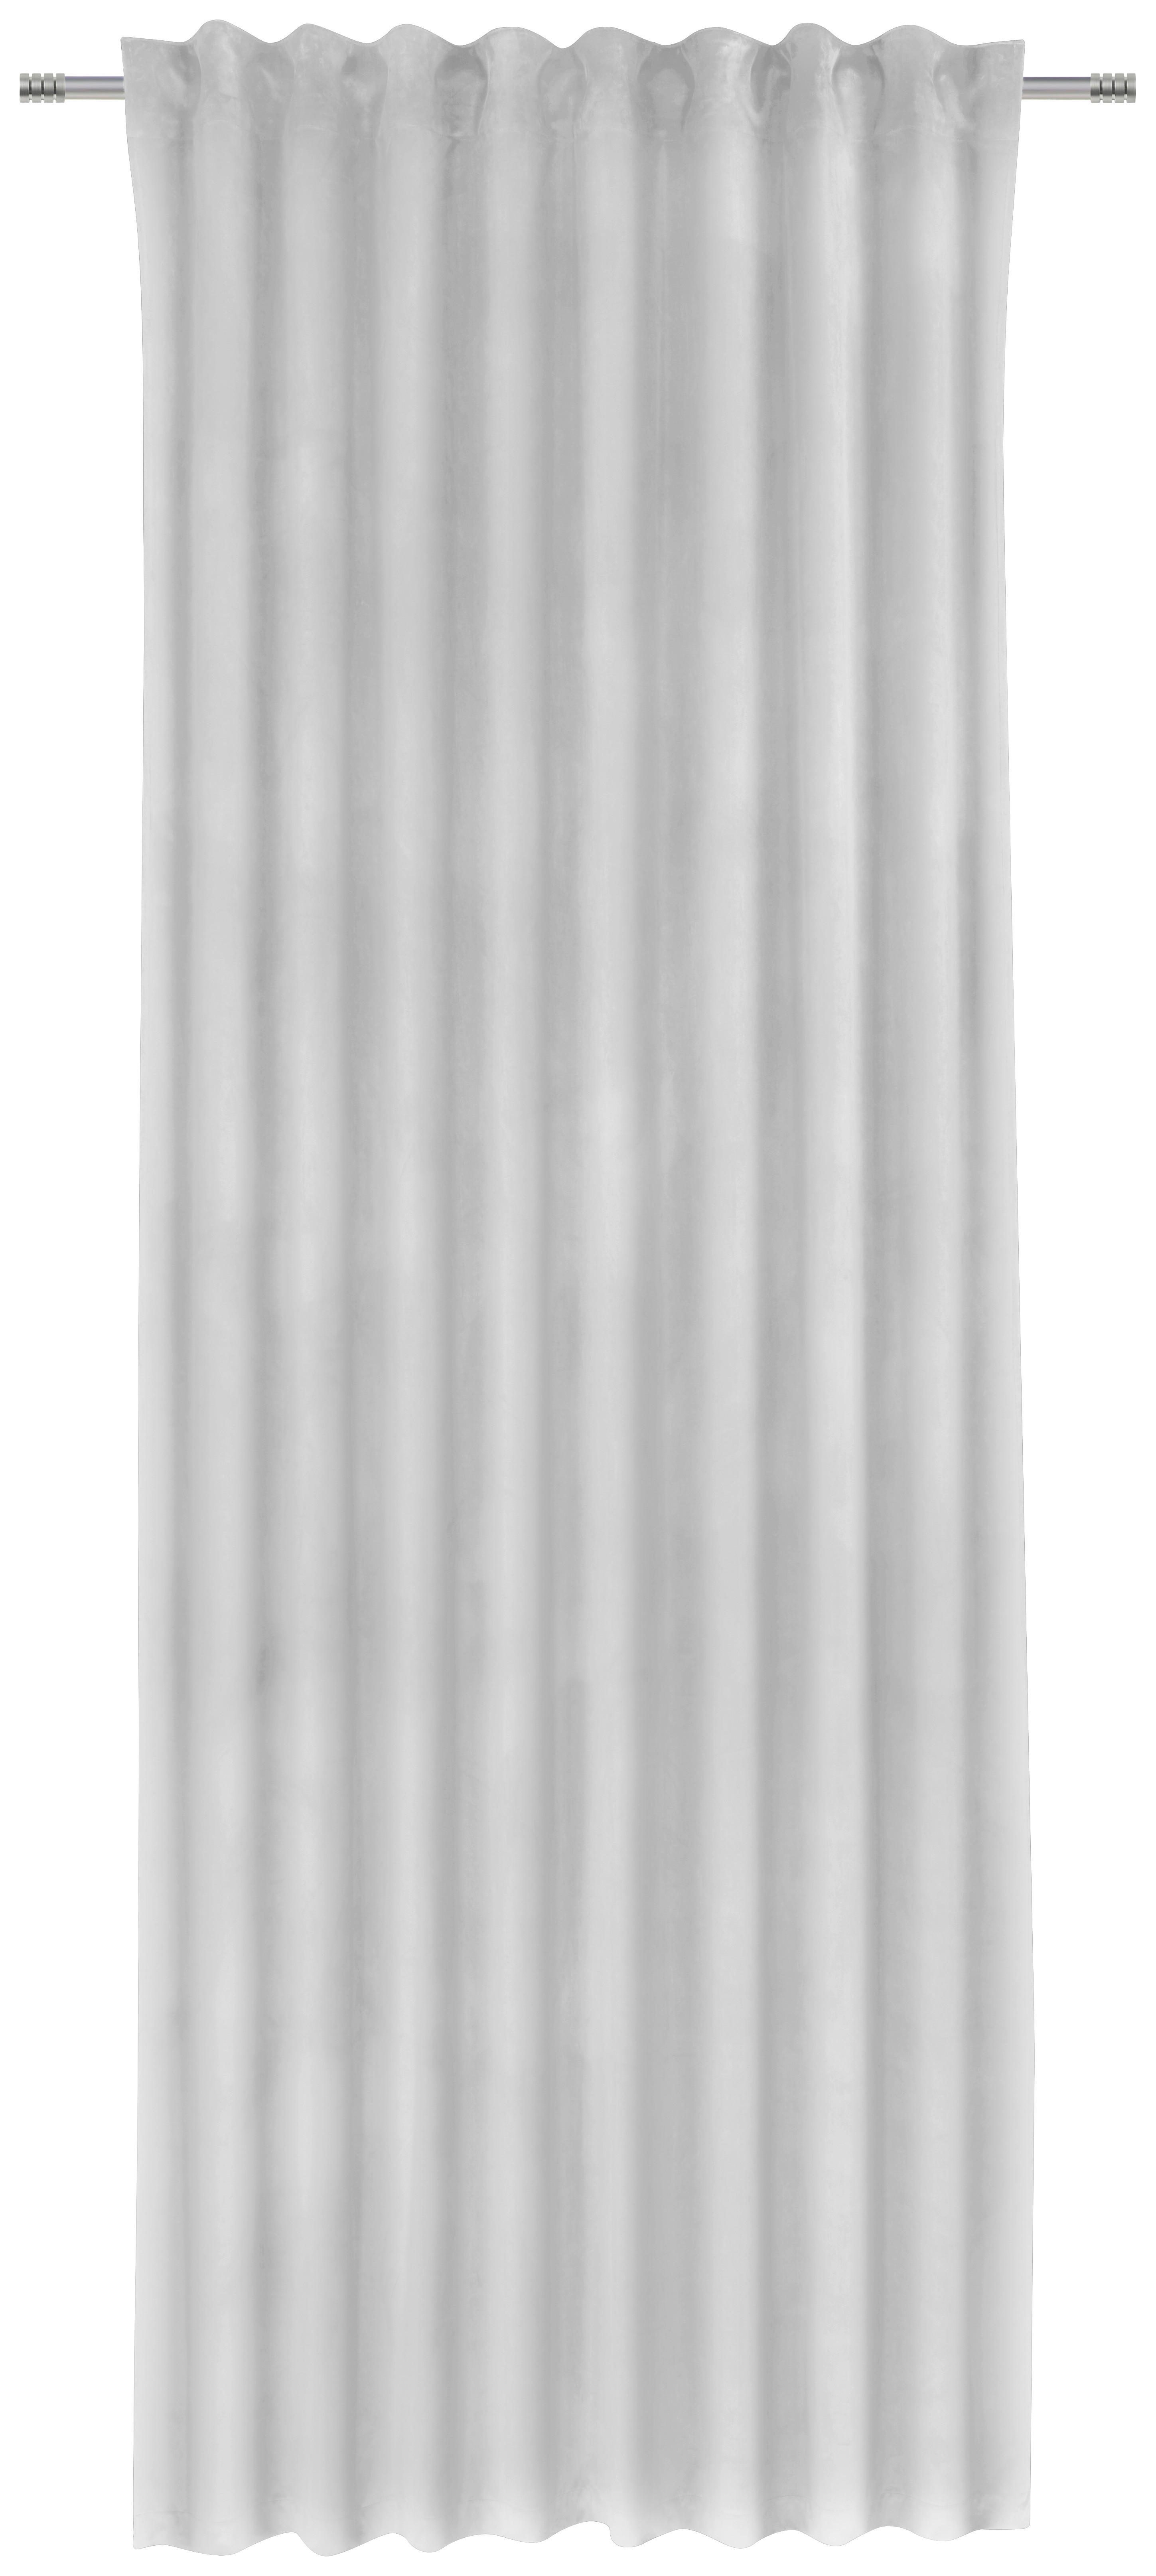 FERTIGVORHANG blickdicht  - Silberfarben, Konventionell, Textil (135/255cm) - Esposa